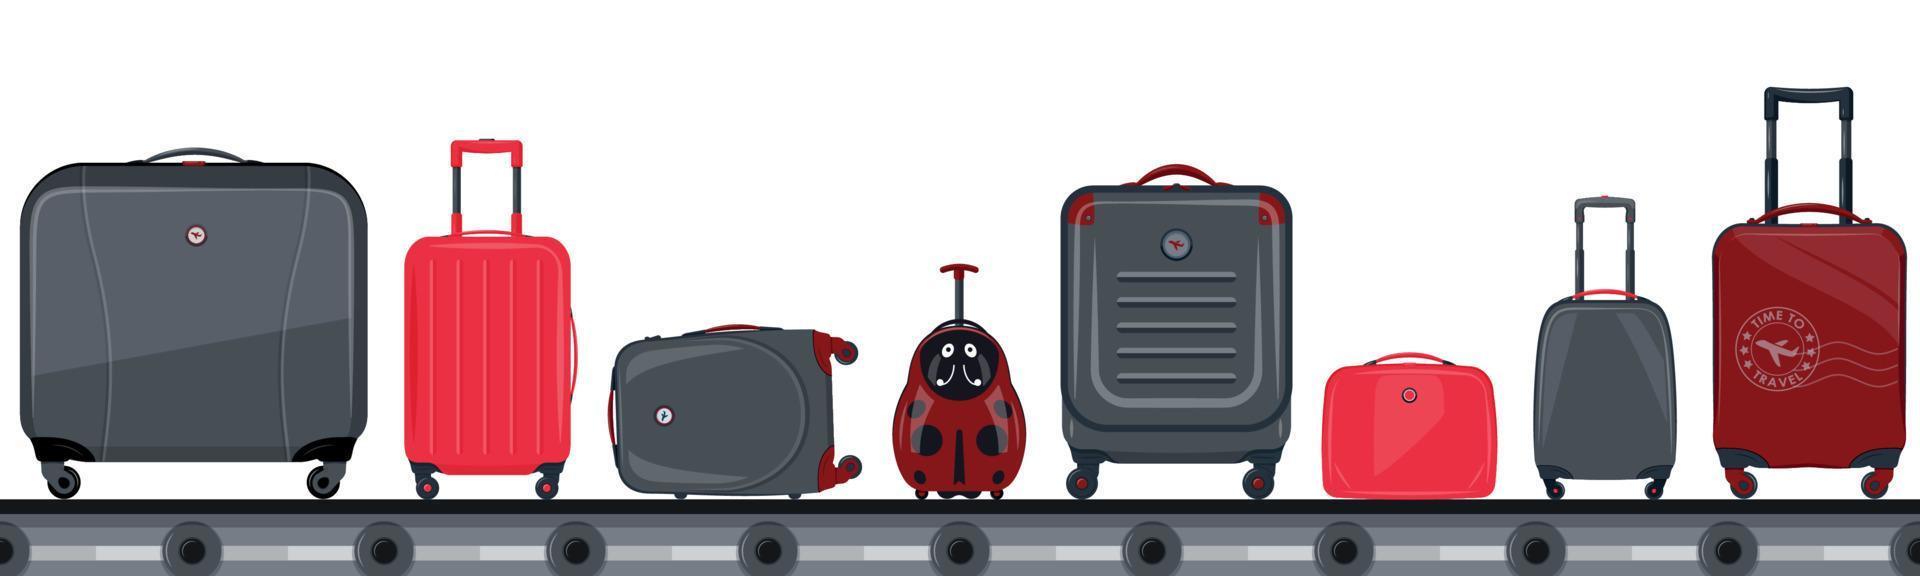 esteira transportadora do aeroporto com bagagem de passageiros vetor